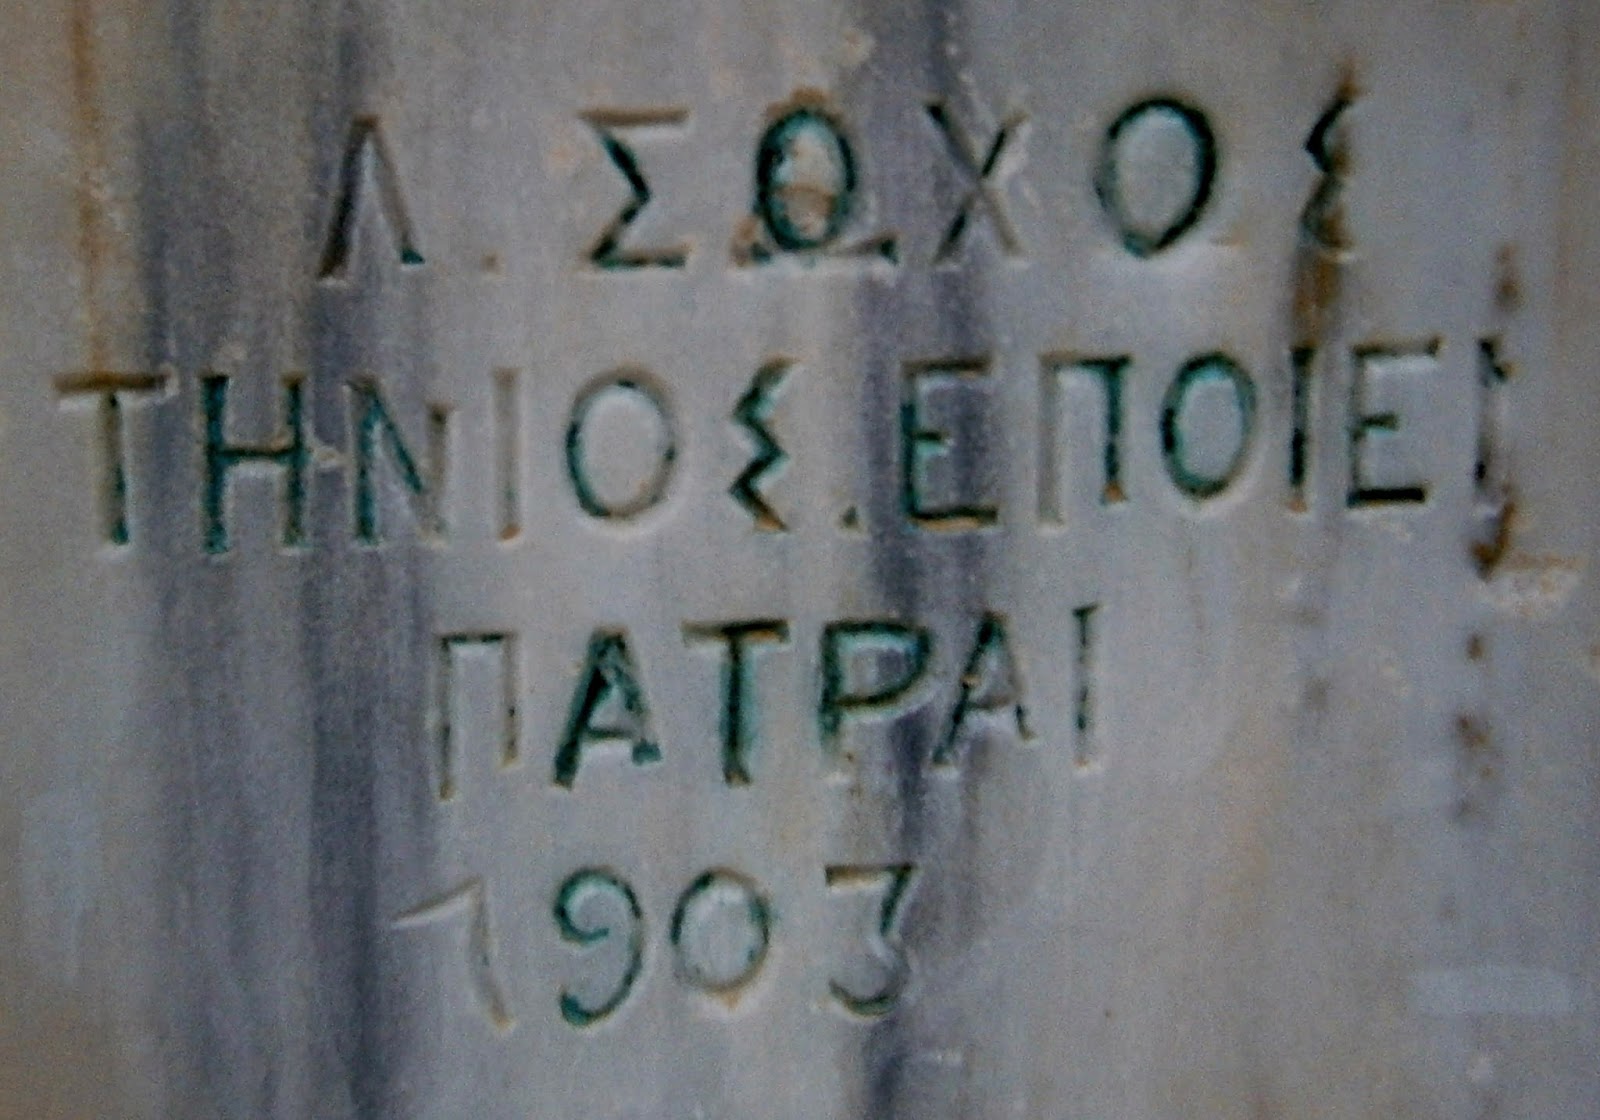 το μνημείο πεσόντων στον πόλεμο του 1897 στη Λευκάδα